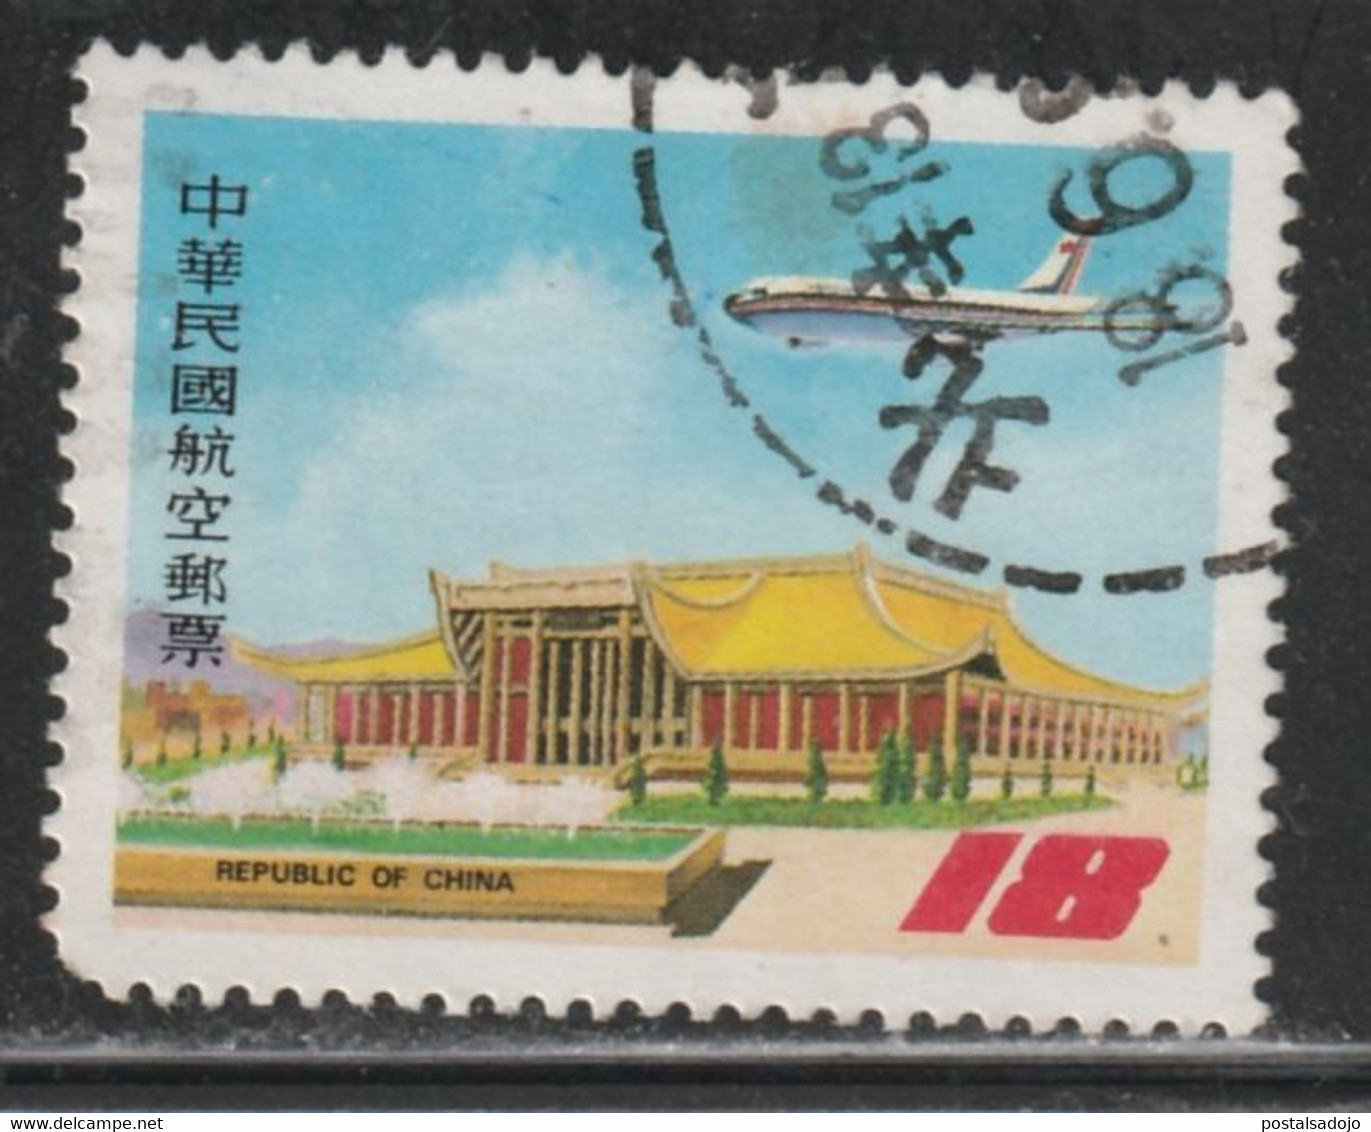 TAIWAN 205 // YVERT 73 (aérien) // 1984 - Airmail